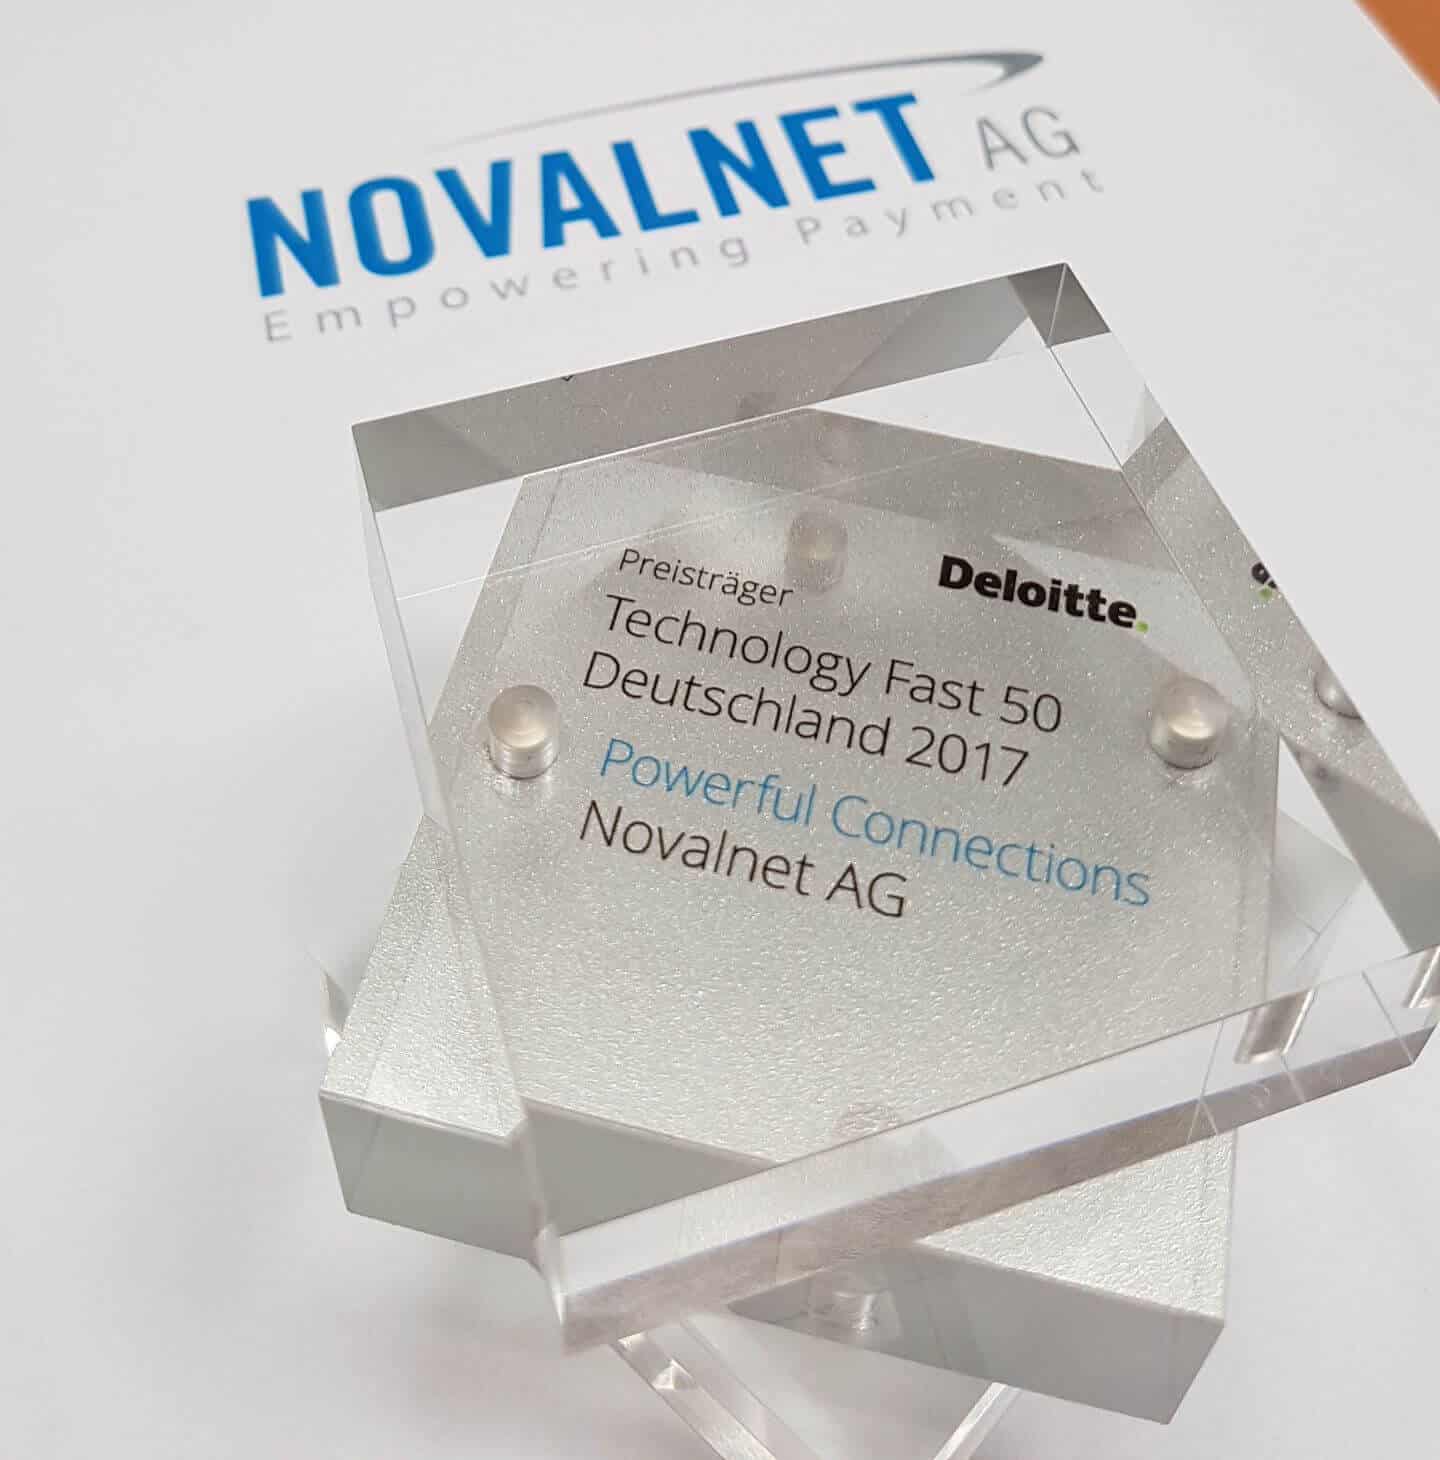 Novalnet gewinnt „Deloitte Technology Fast 50 Award“